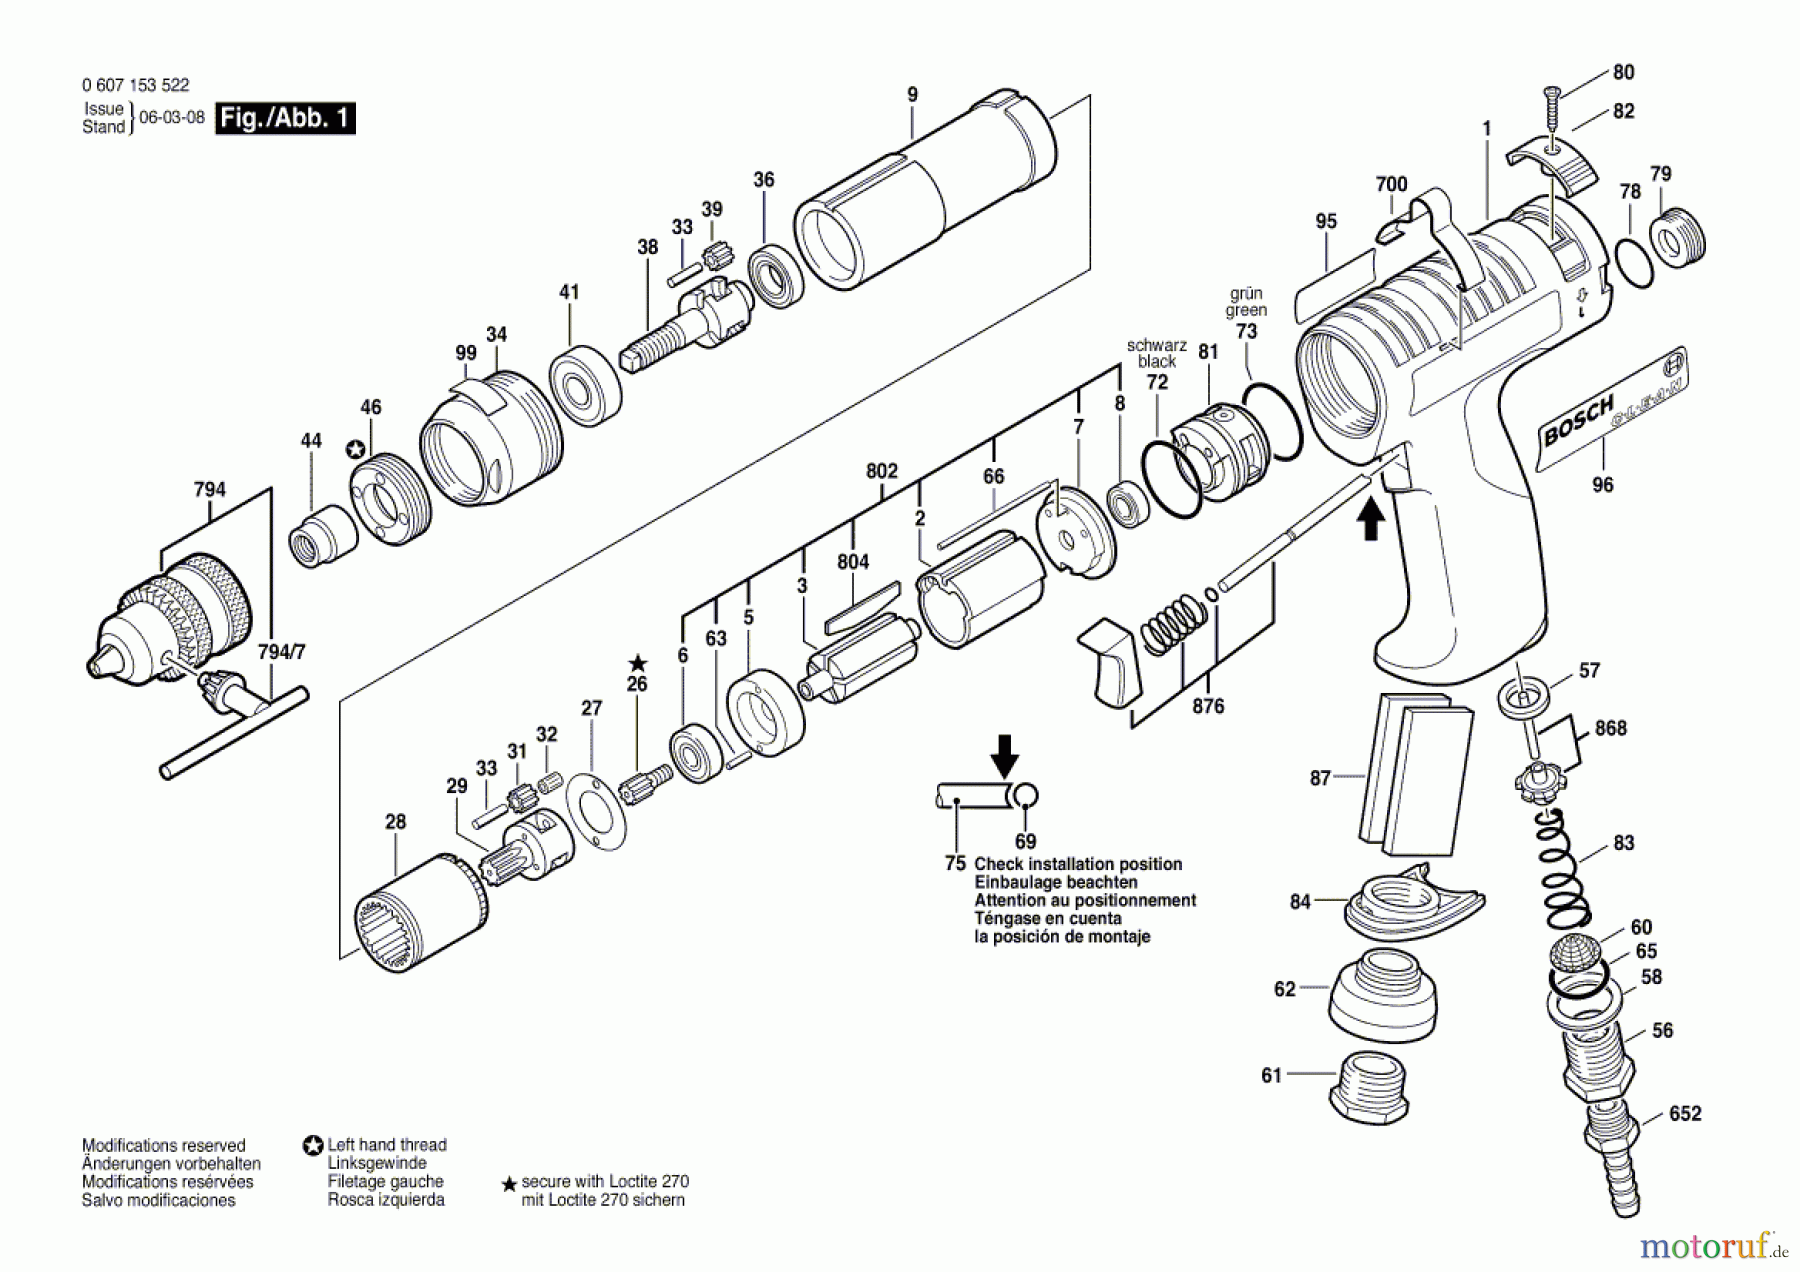  Bosch Werkzeug Pw-Bohrmaschine-Ind 180 WATT-SERIE Seite 1